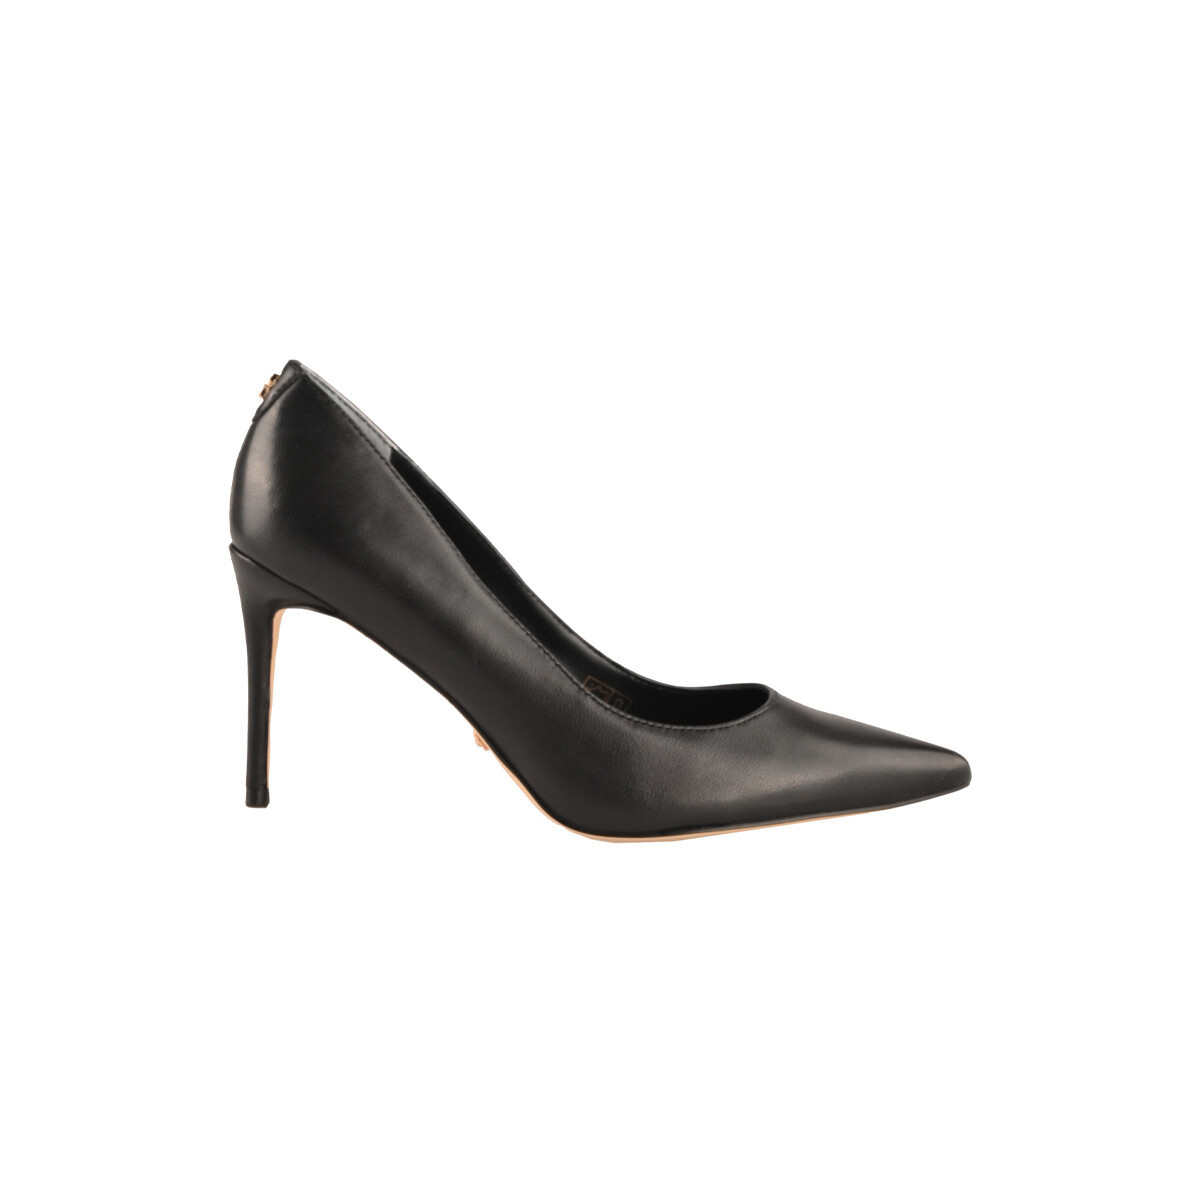 Chaussures Femme Escarpins Guess fl7ric_lea08-black Noir